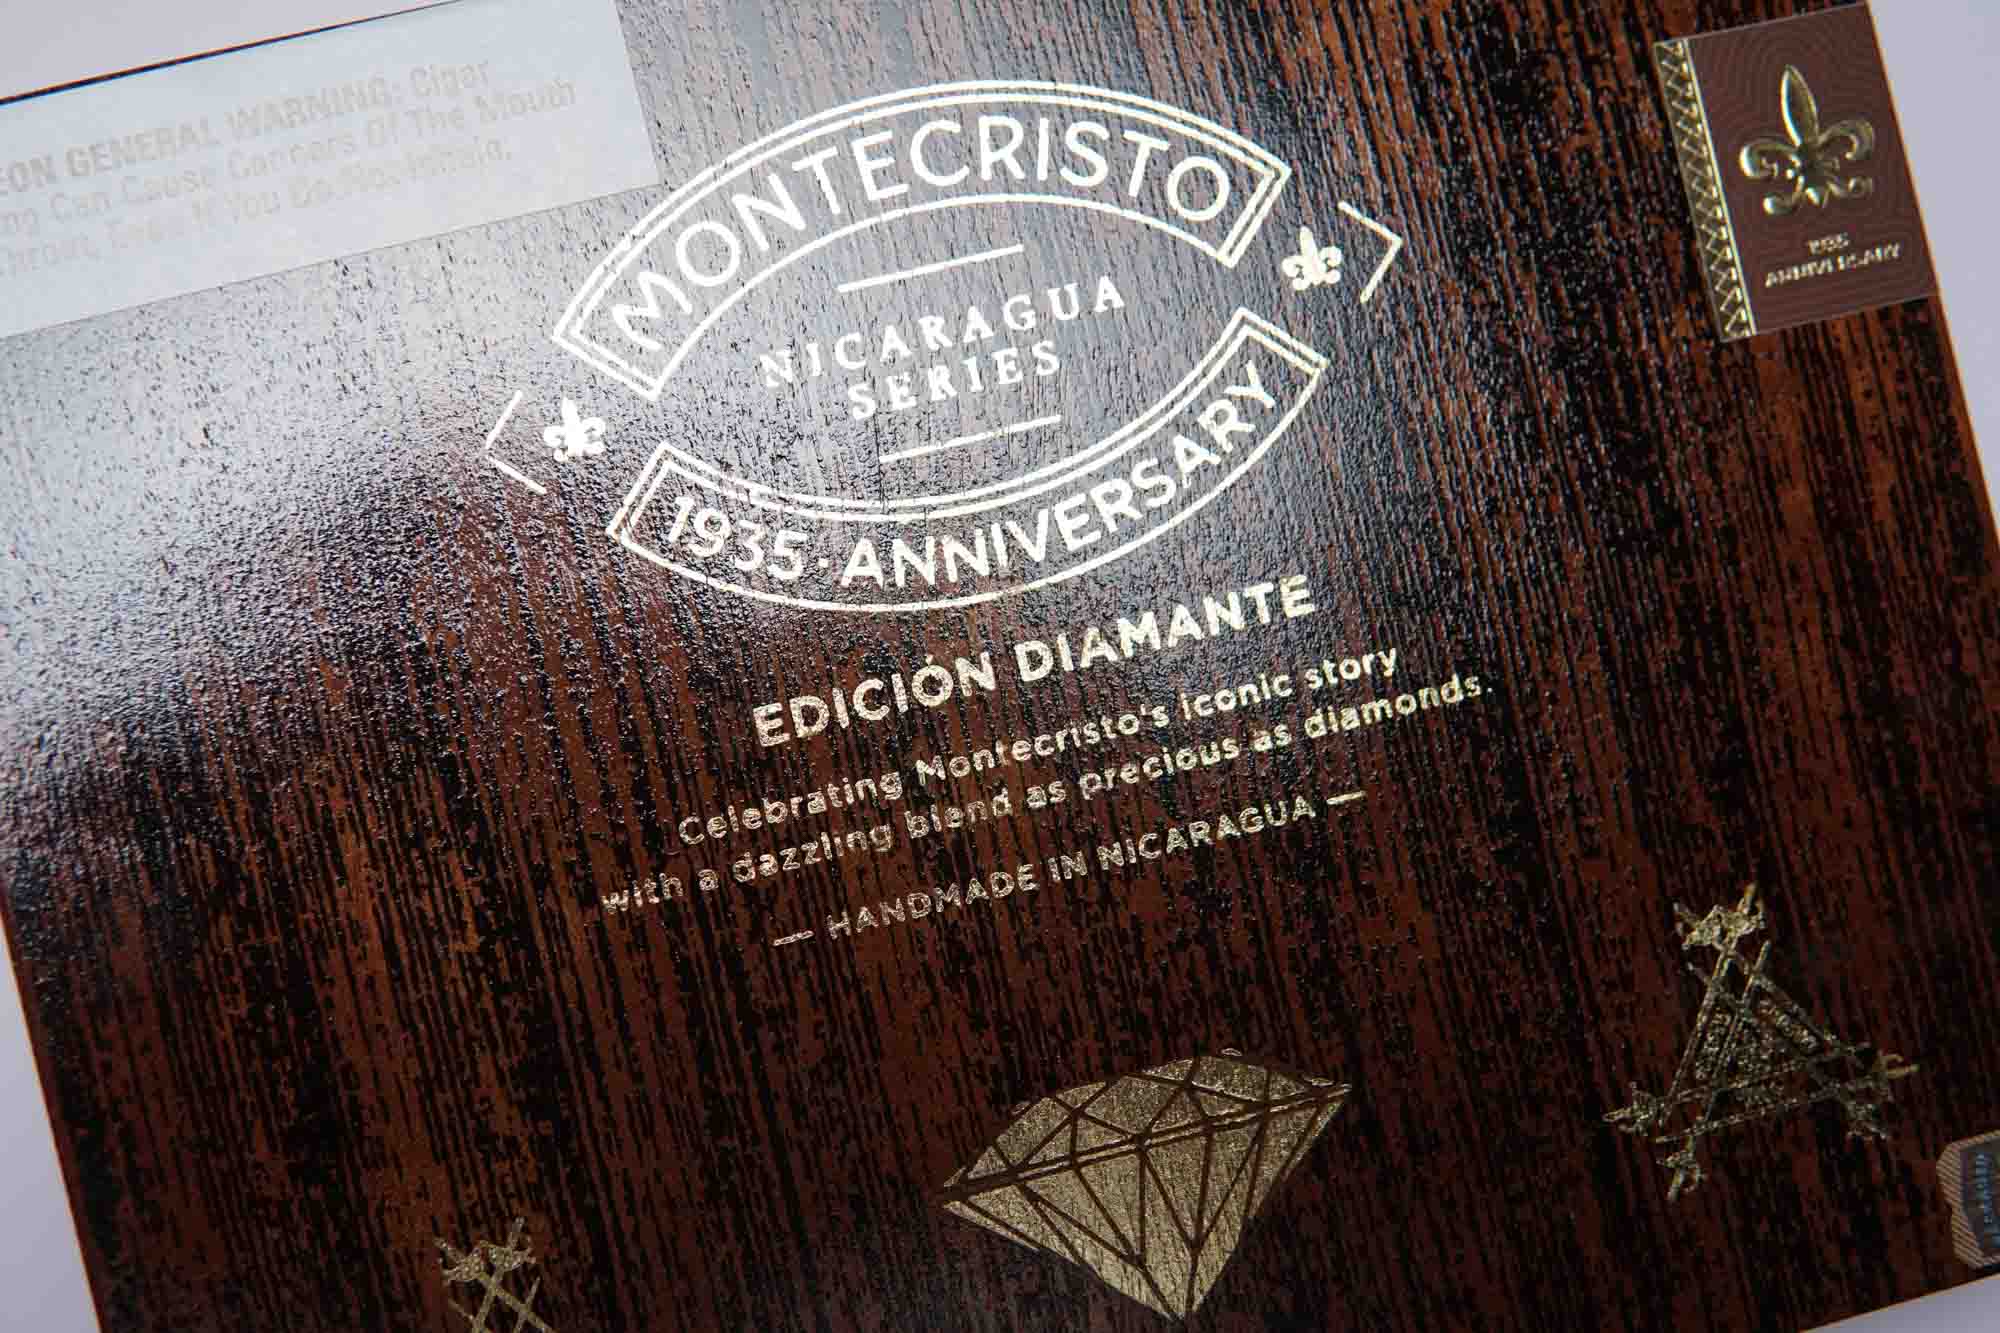 Montecristo 1935 Anniversary Edición Diamante